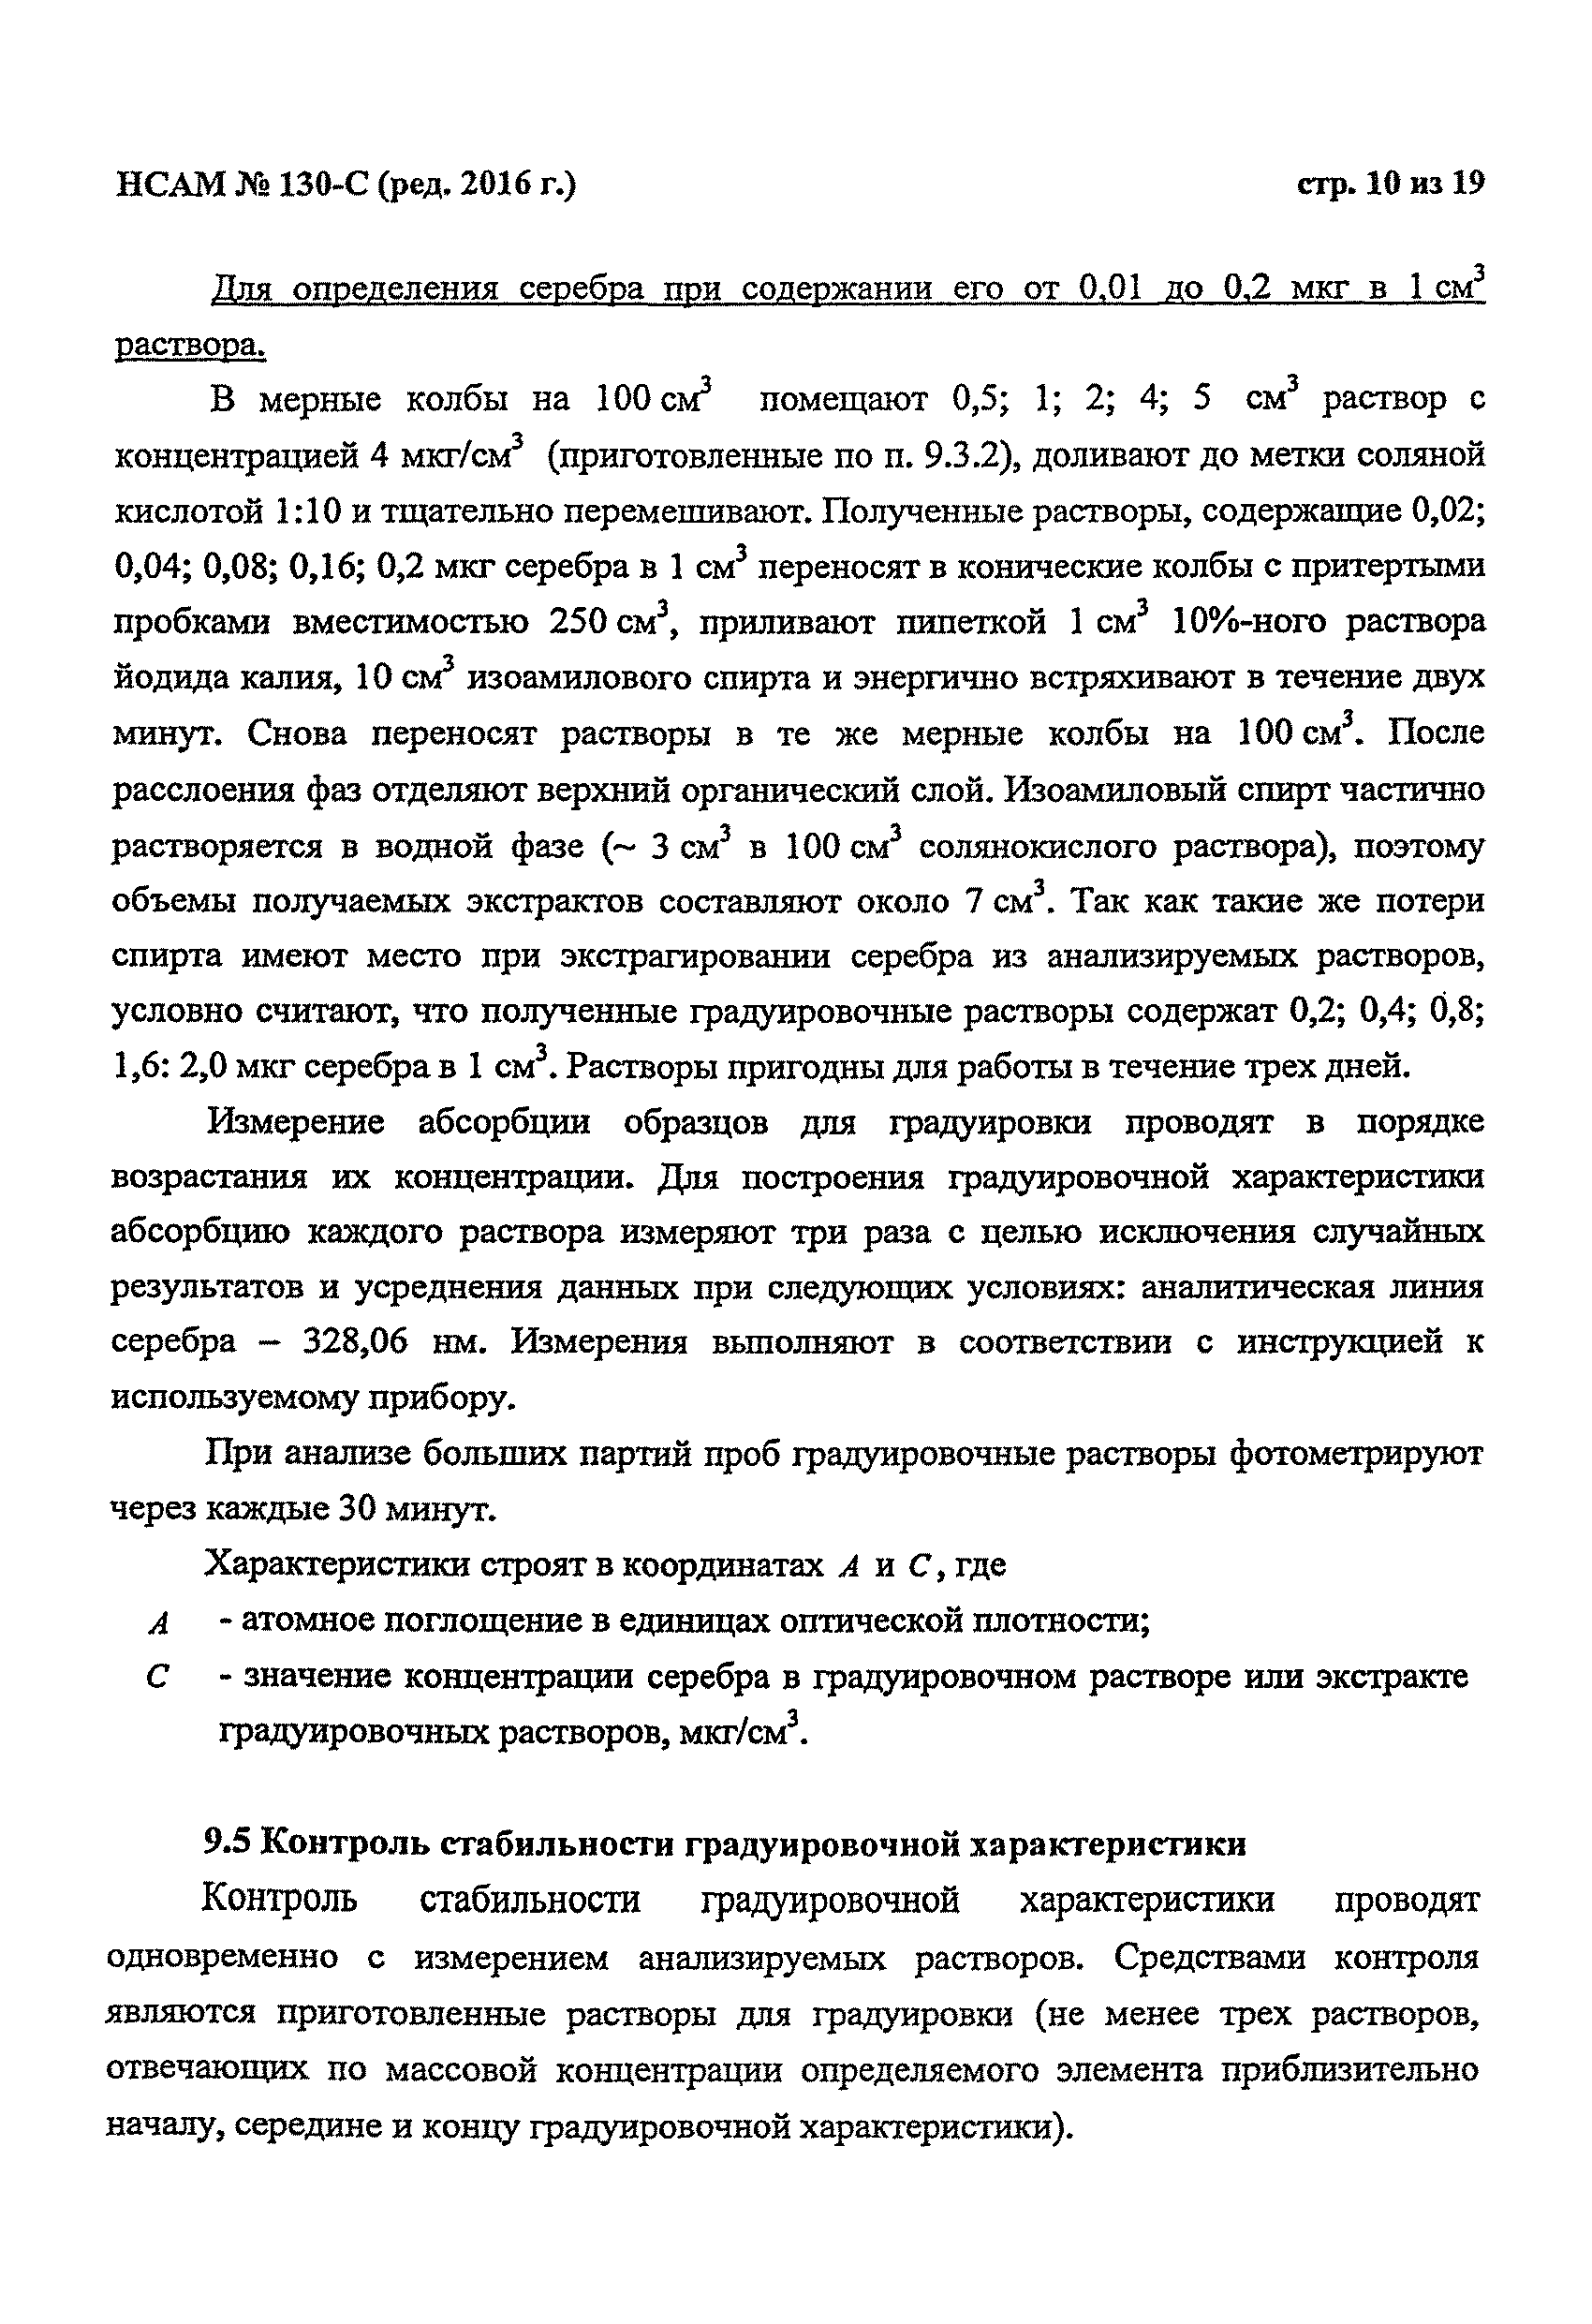 Инструкция НСАМ 130-С